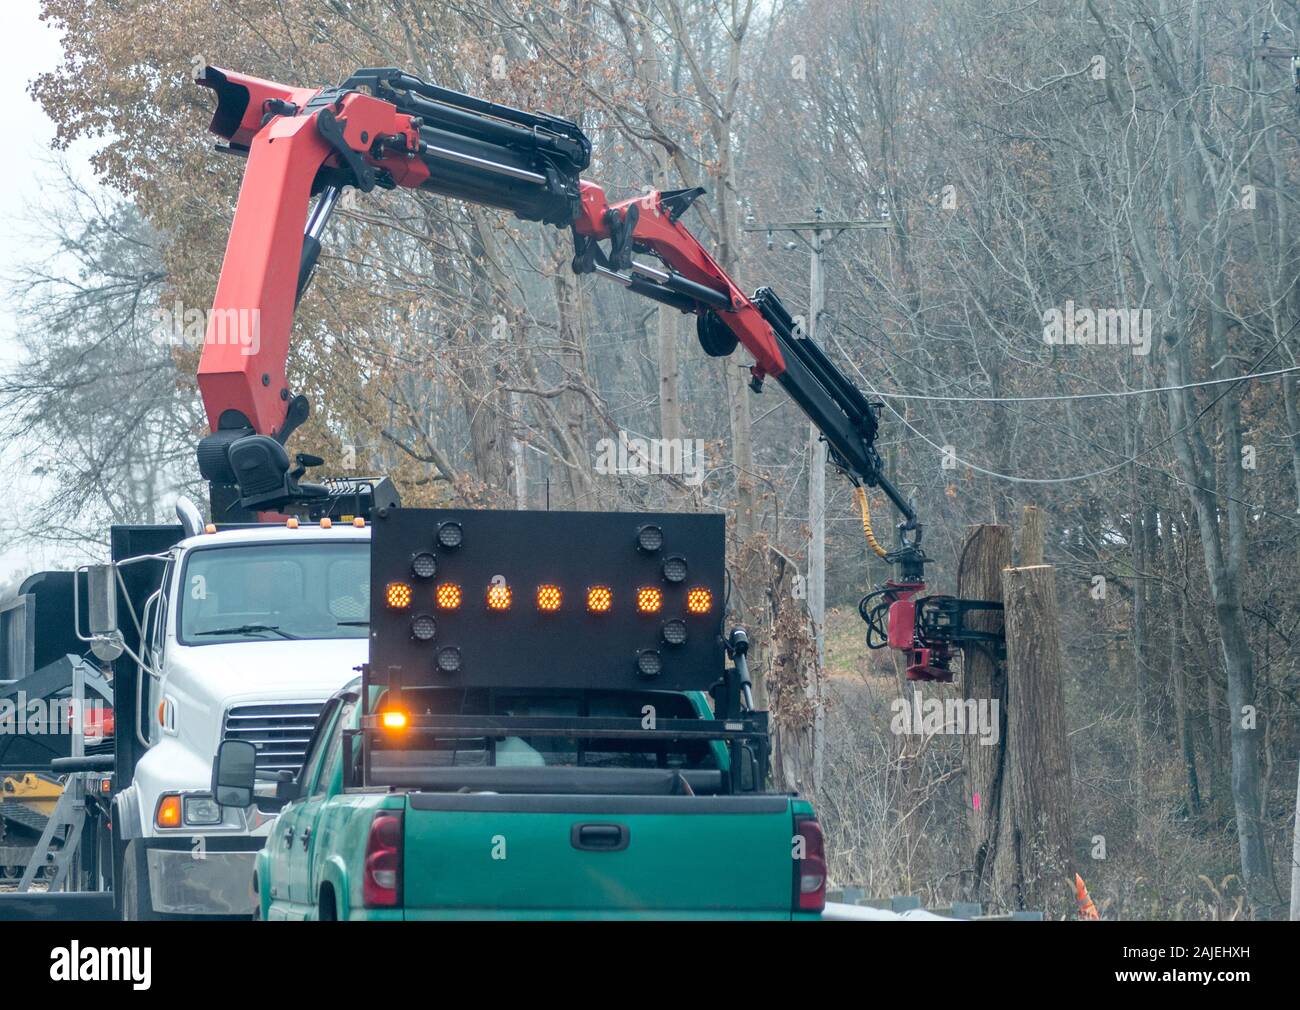 Ein Baum crew nutzt eine einzigartige Kette sah an einem Roboterarm, Schnittholz in schwer entfernen und Bereiche zu erreichen. Stockfoto